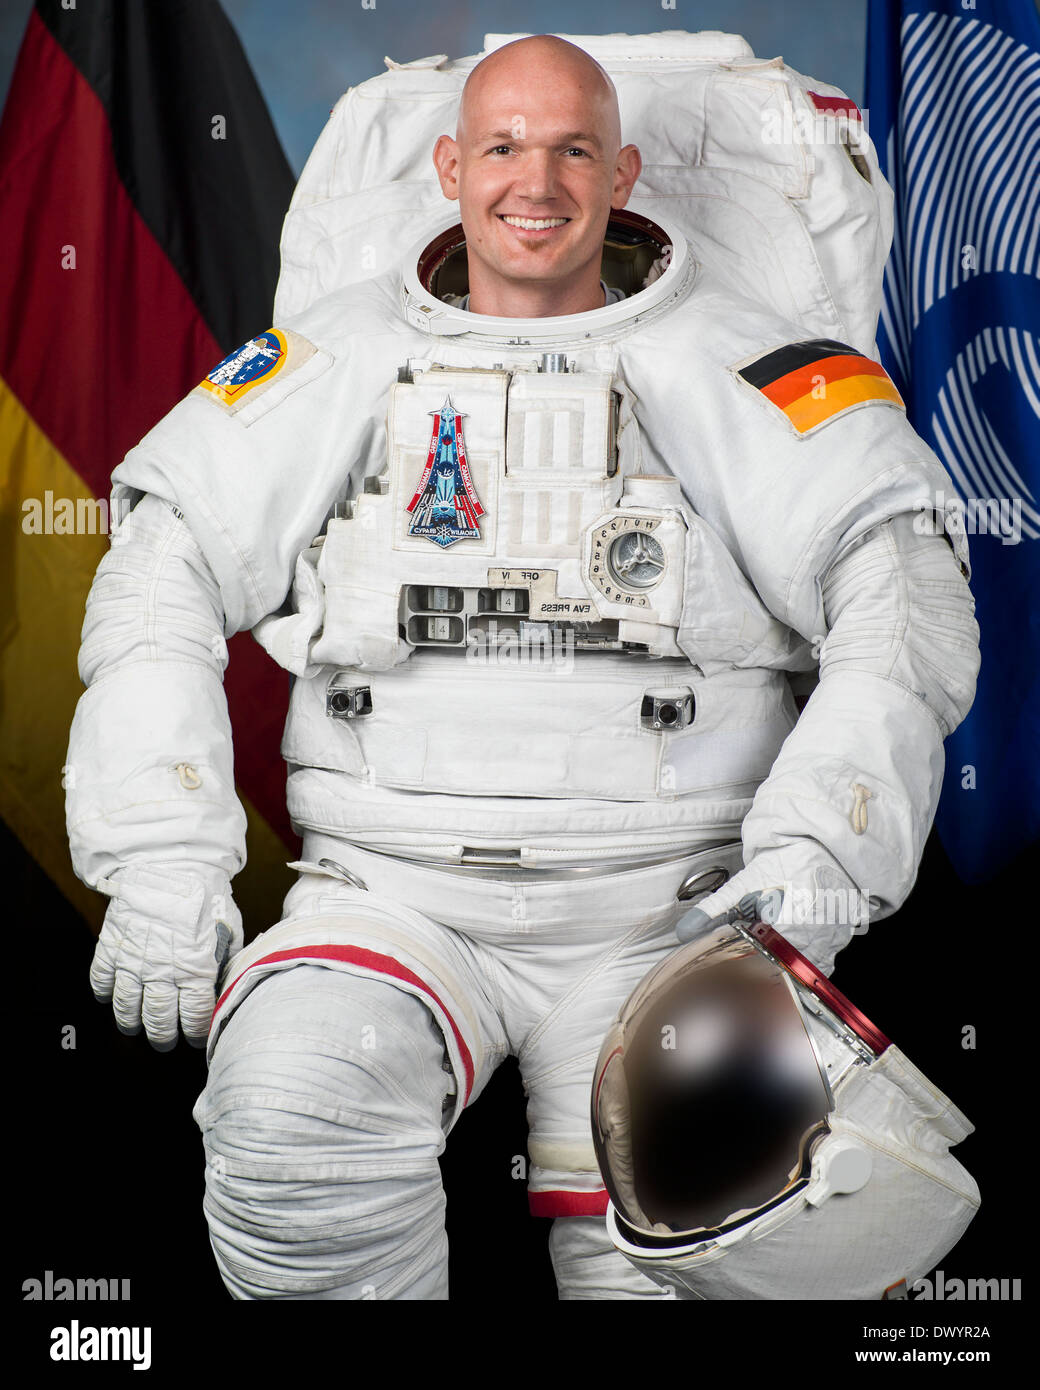 Offizielles Porträt von ESA-Astronaut Alexander Gerst in einer  Extravehicular Mobility Unit Anzug am Johnson Space Center 3. Juni 2013 in  Houston, Texas Stockfotografie - Alamy